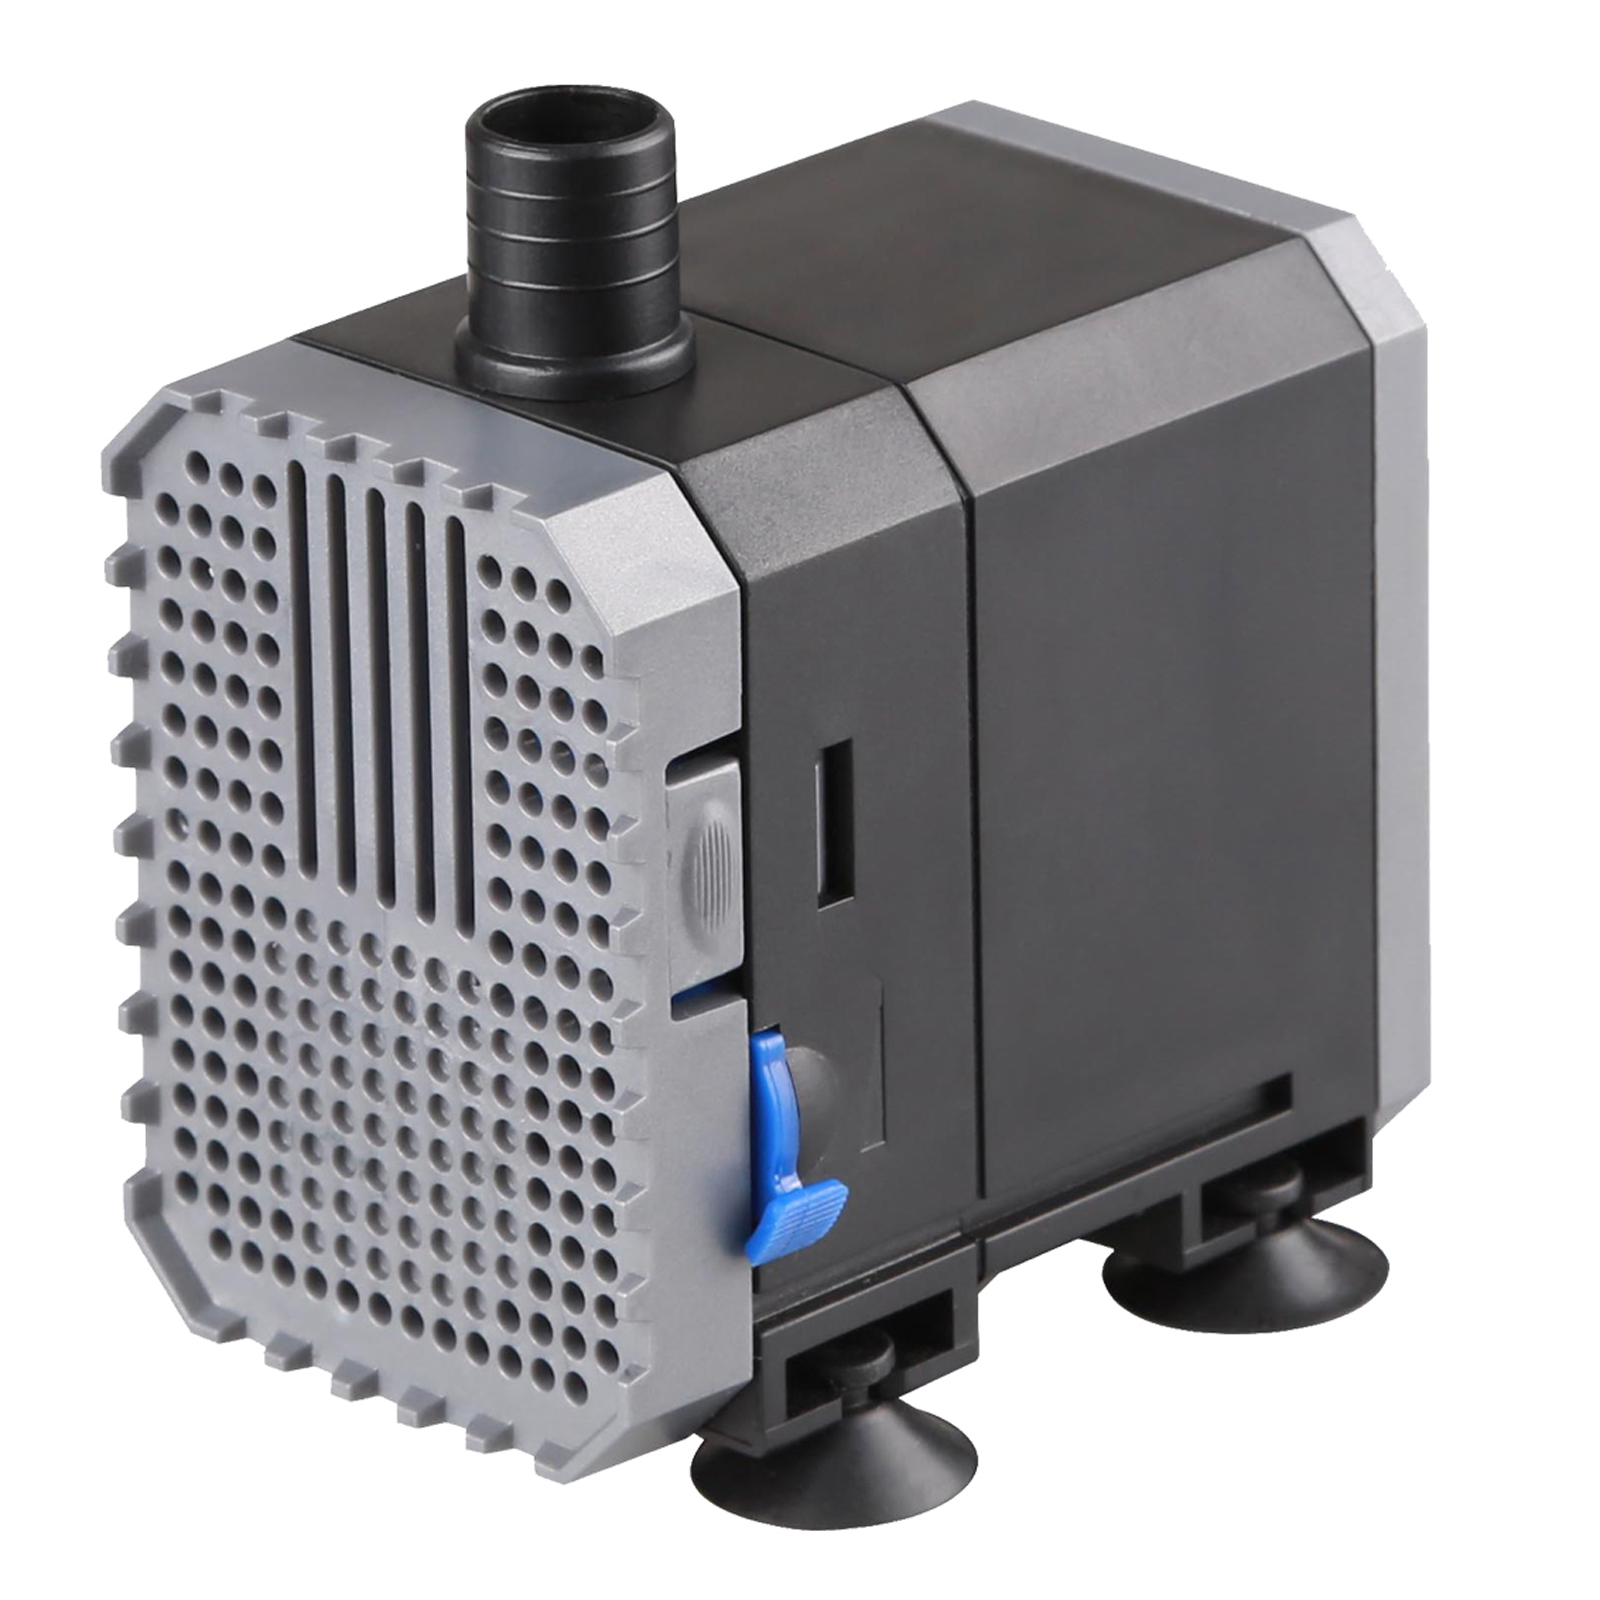 SunSun CHJ-500 Eco Pompa filtro acquario 500l/h 7W